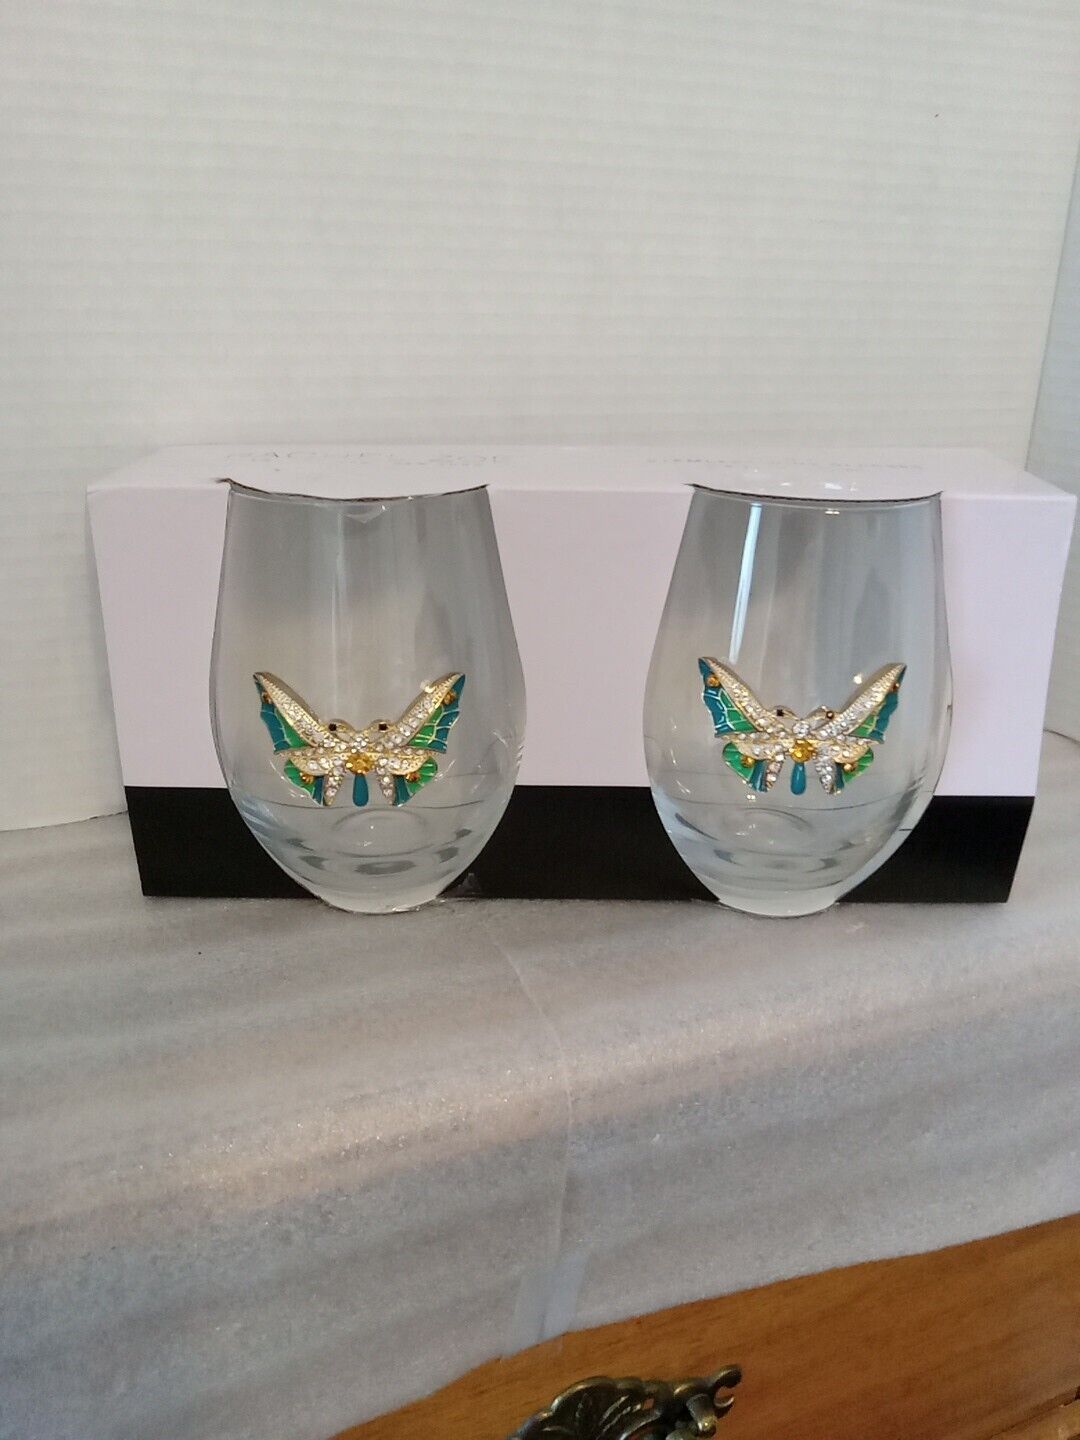 2 Rachel Zoe Jeweled Butterfly Wine Glasses new in box